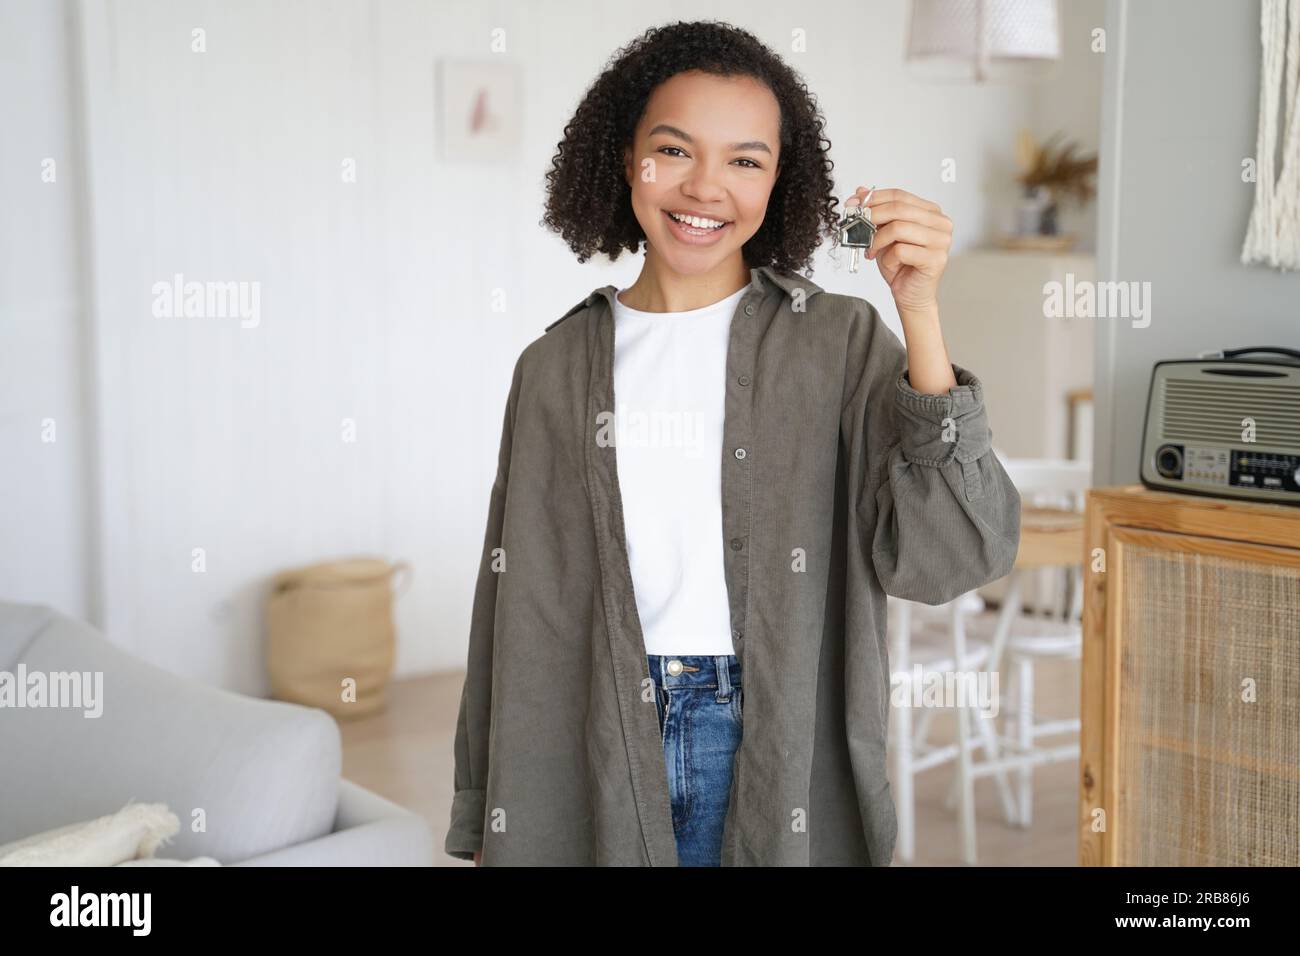 La ragazza felice mostra le chiavi del primo appartamento. Un adolescente sorridente tiene la chiave di casa, in piedi nella nuova casa. Il servizio di affitto di immobili pubblicizza il trasferimento. Foto Stock